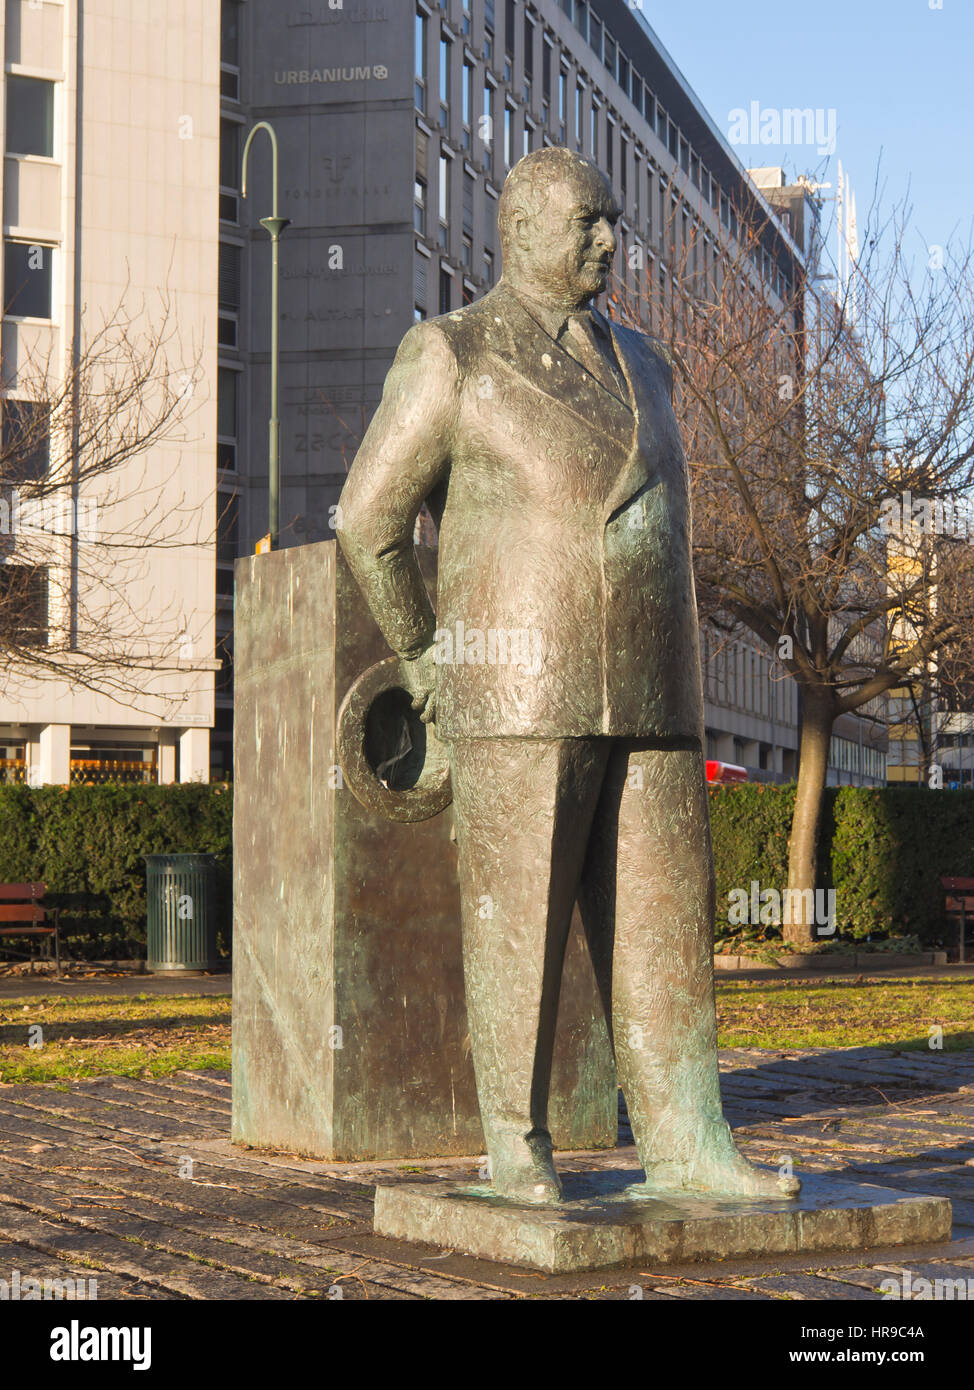 Monumento in onore del tardo Norwegian re Olav V , 'Mann og bauta' dallo scultore Olav Orud nel centro di Oslo Norvegia, vicino alla City Hall Foto Stock